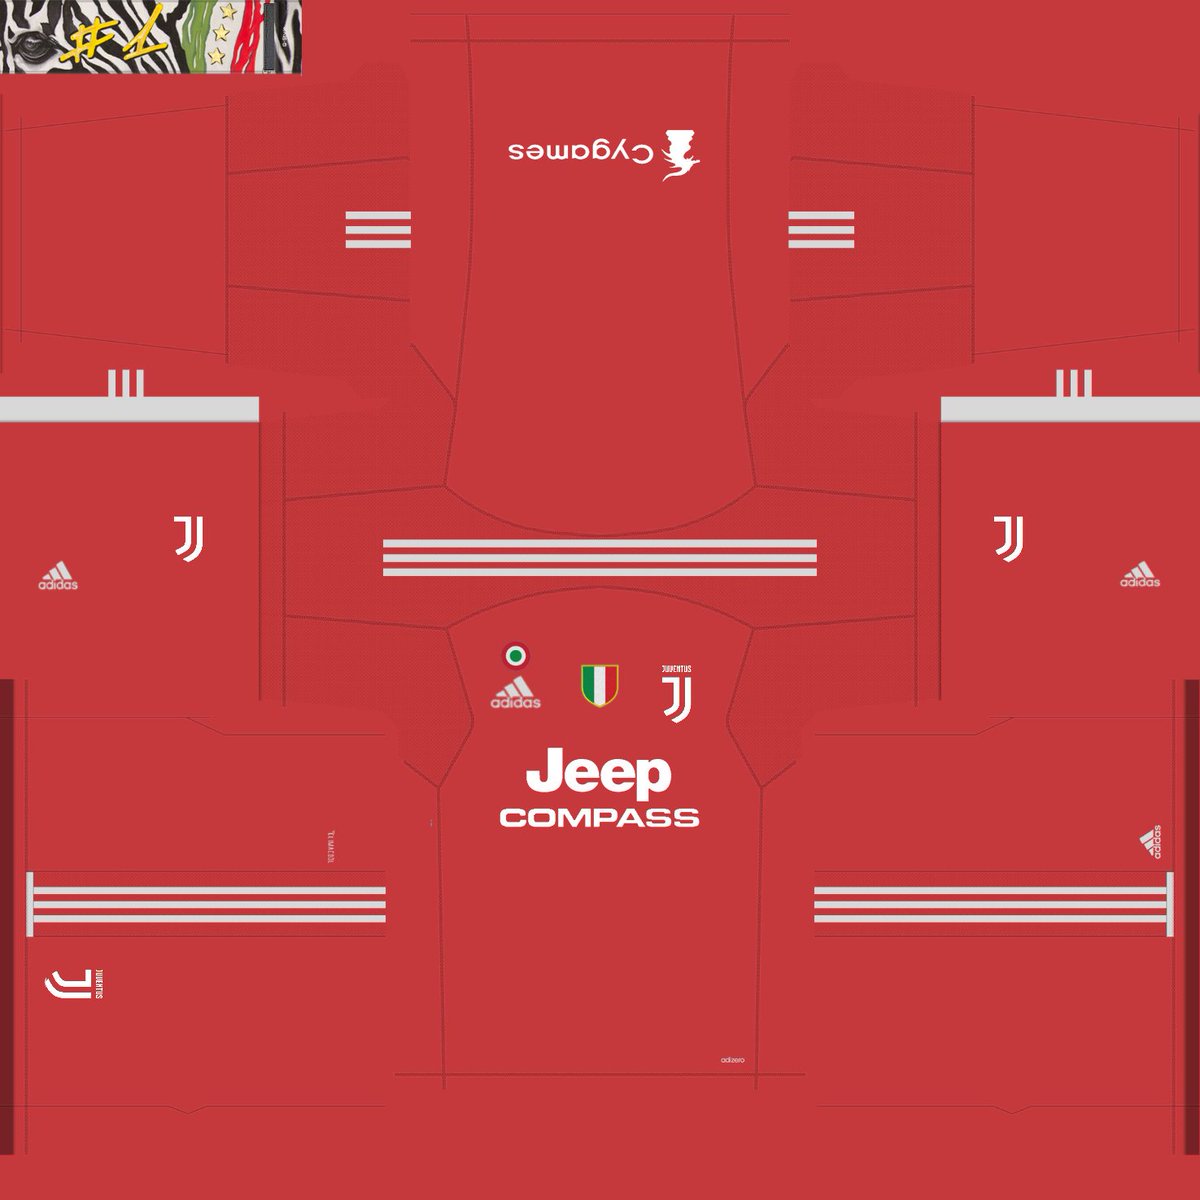 Kits Pes 201718 On Twitter Kits Juventus Gk Escudo De